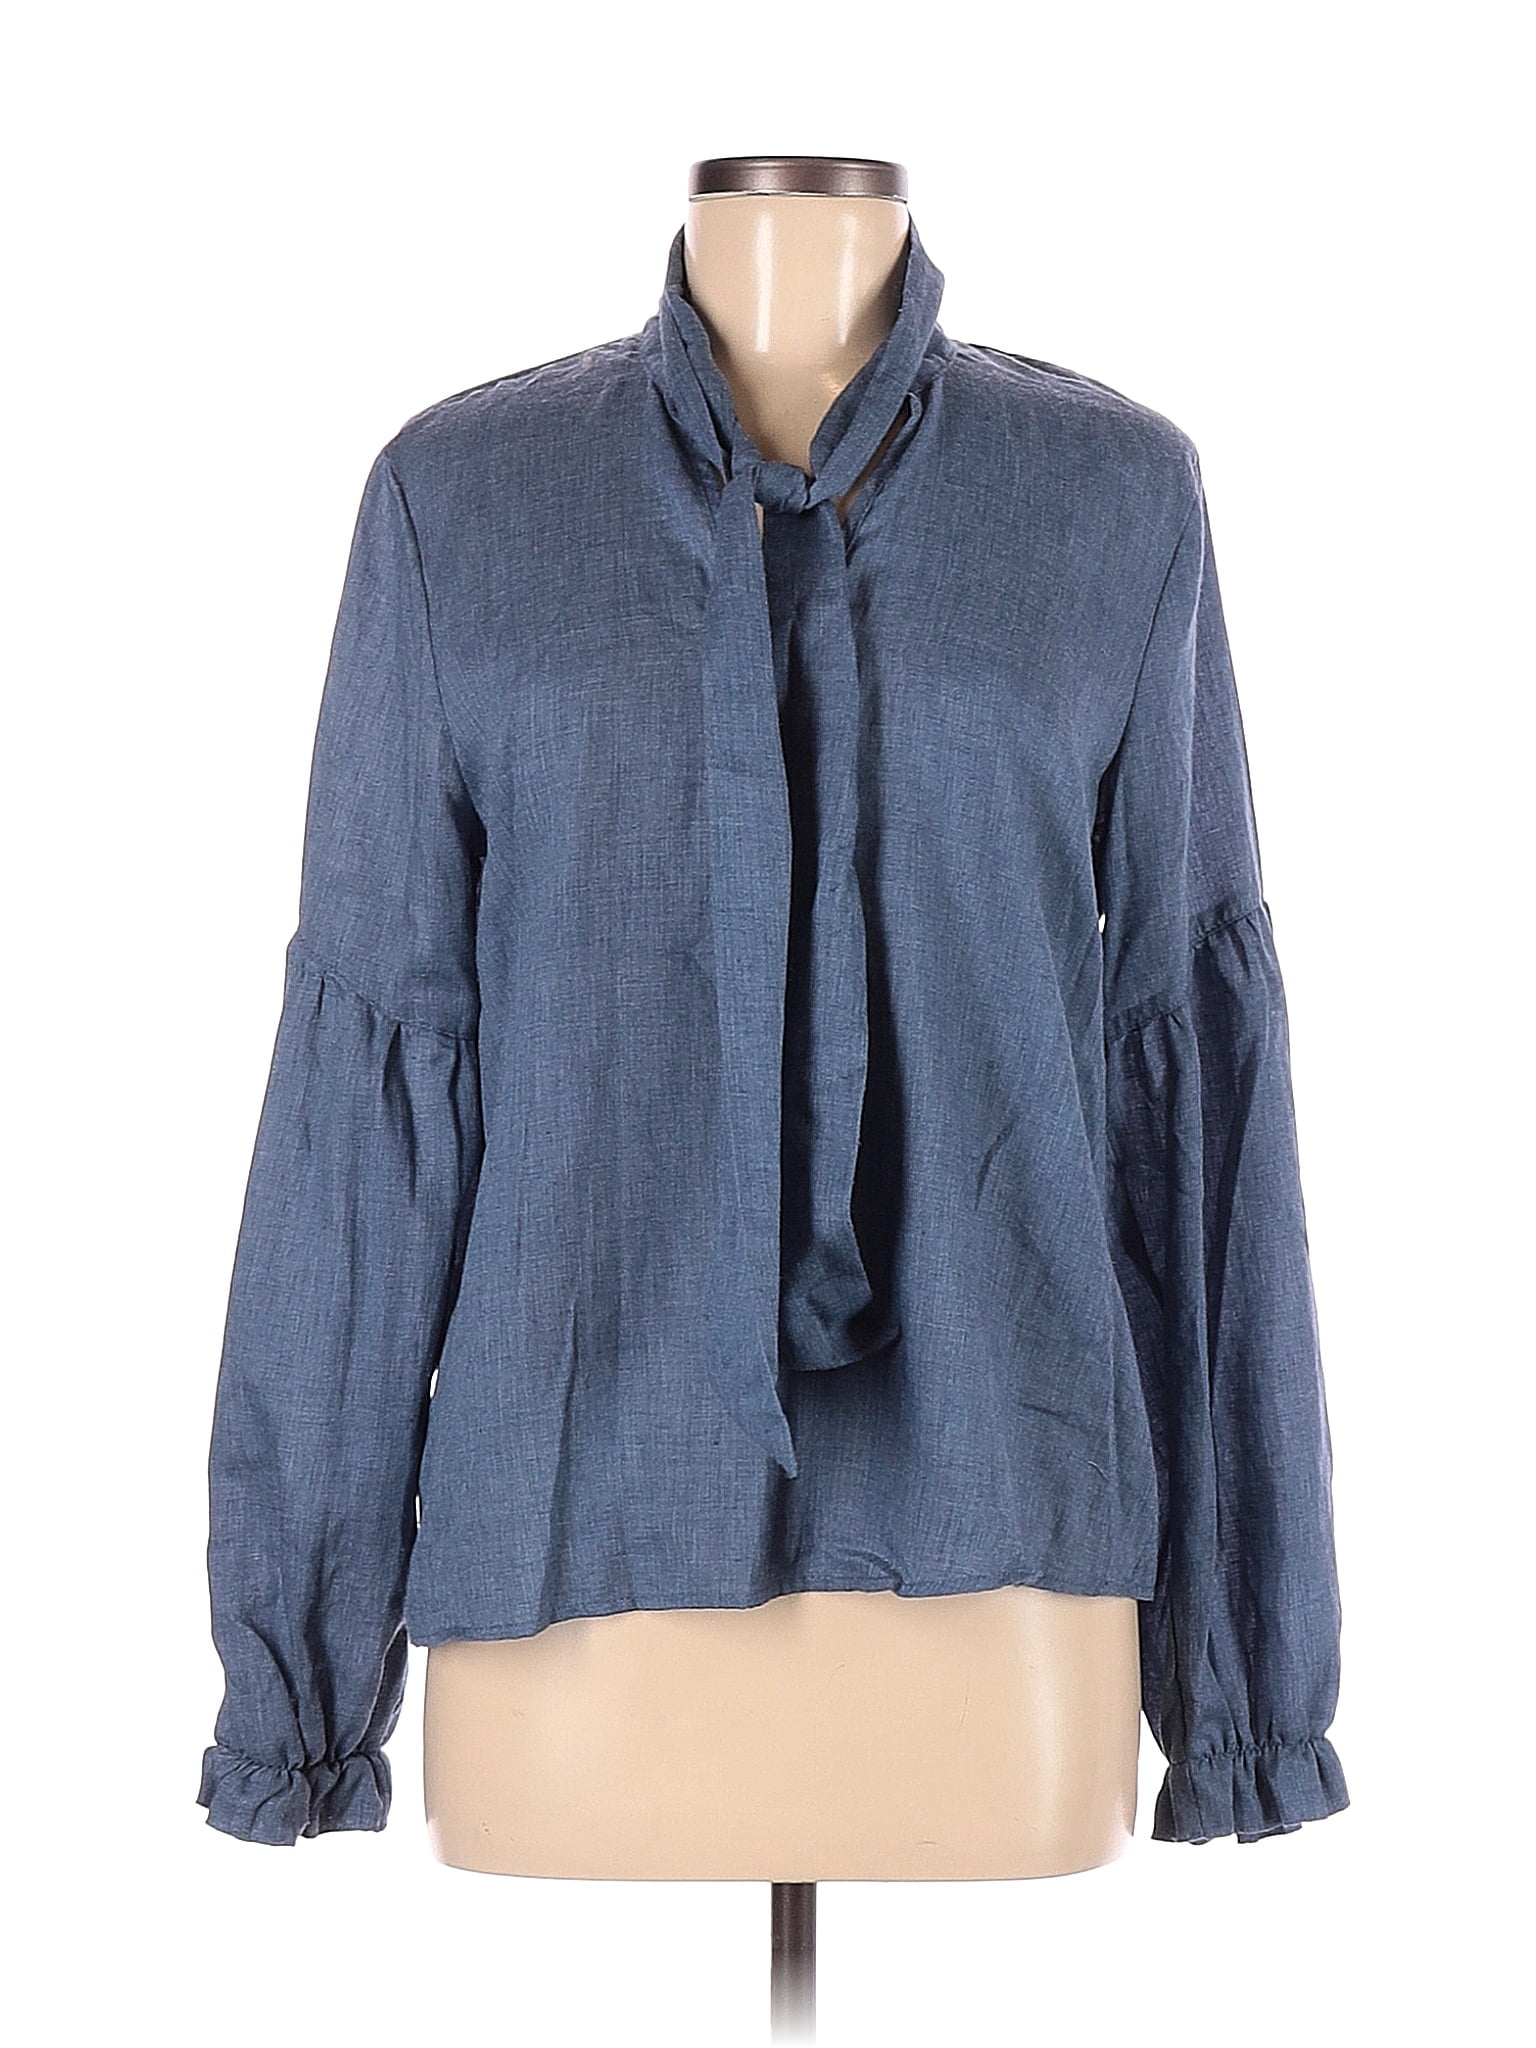 Amadi Blue Long Sleeve Blouse Size M - 83% off | ThredUp